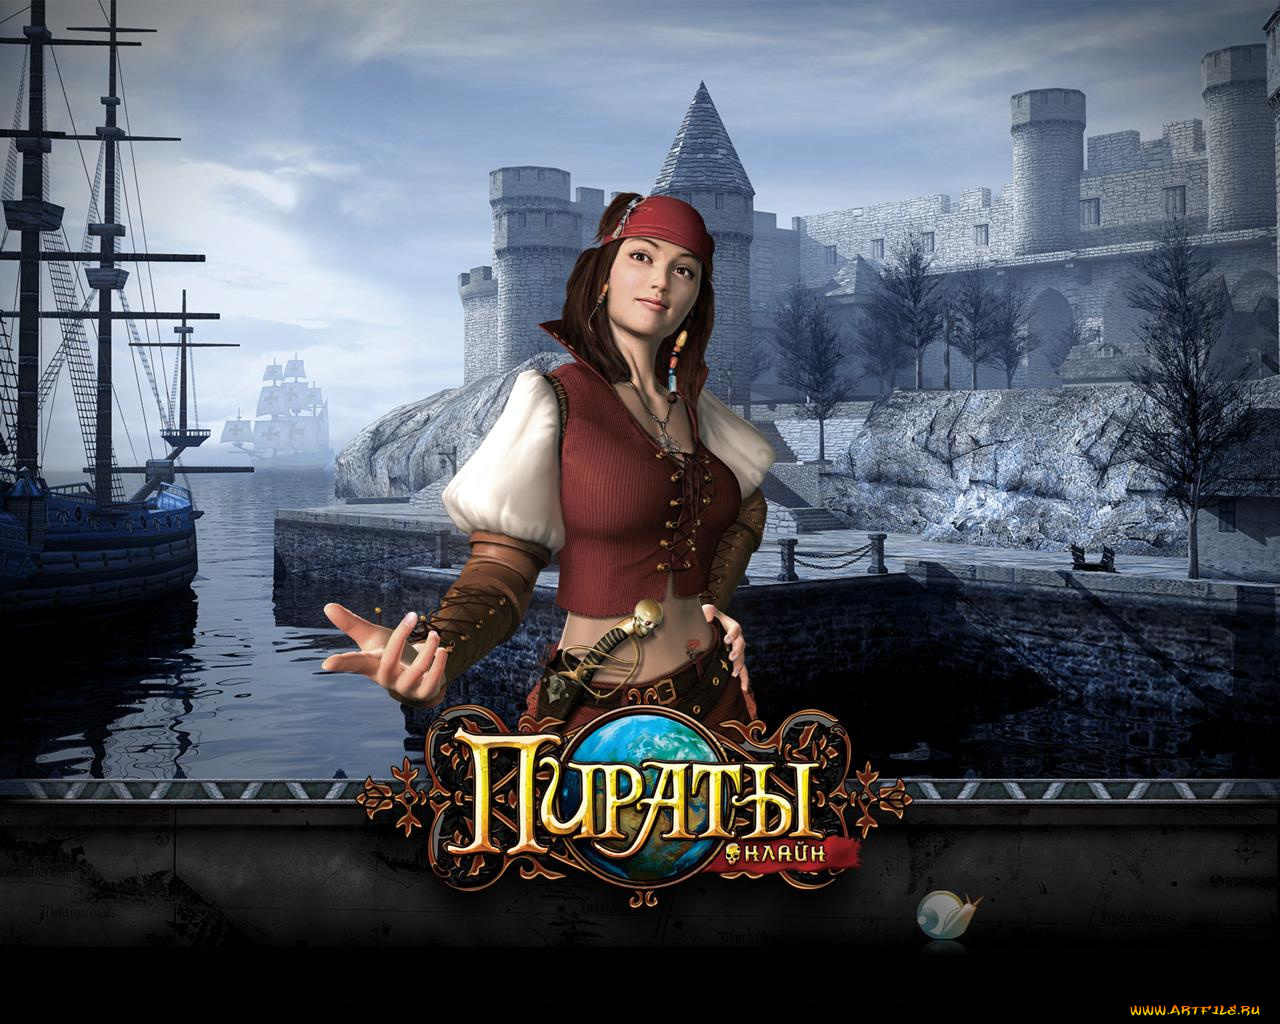 пираты, онлайн, видео, игры, voyage, century, online